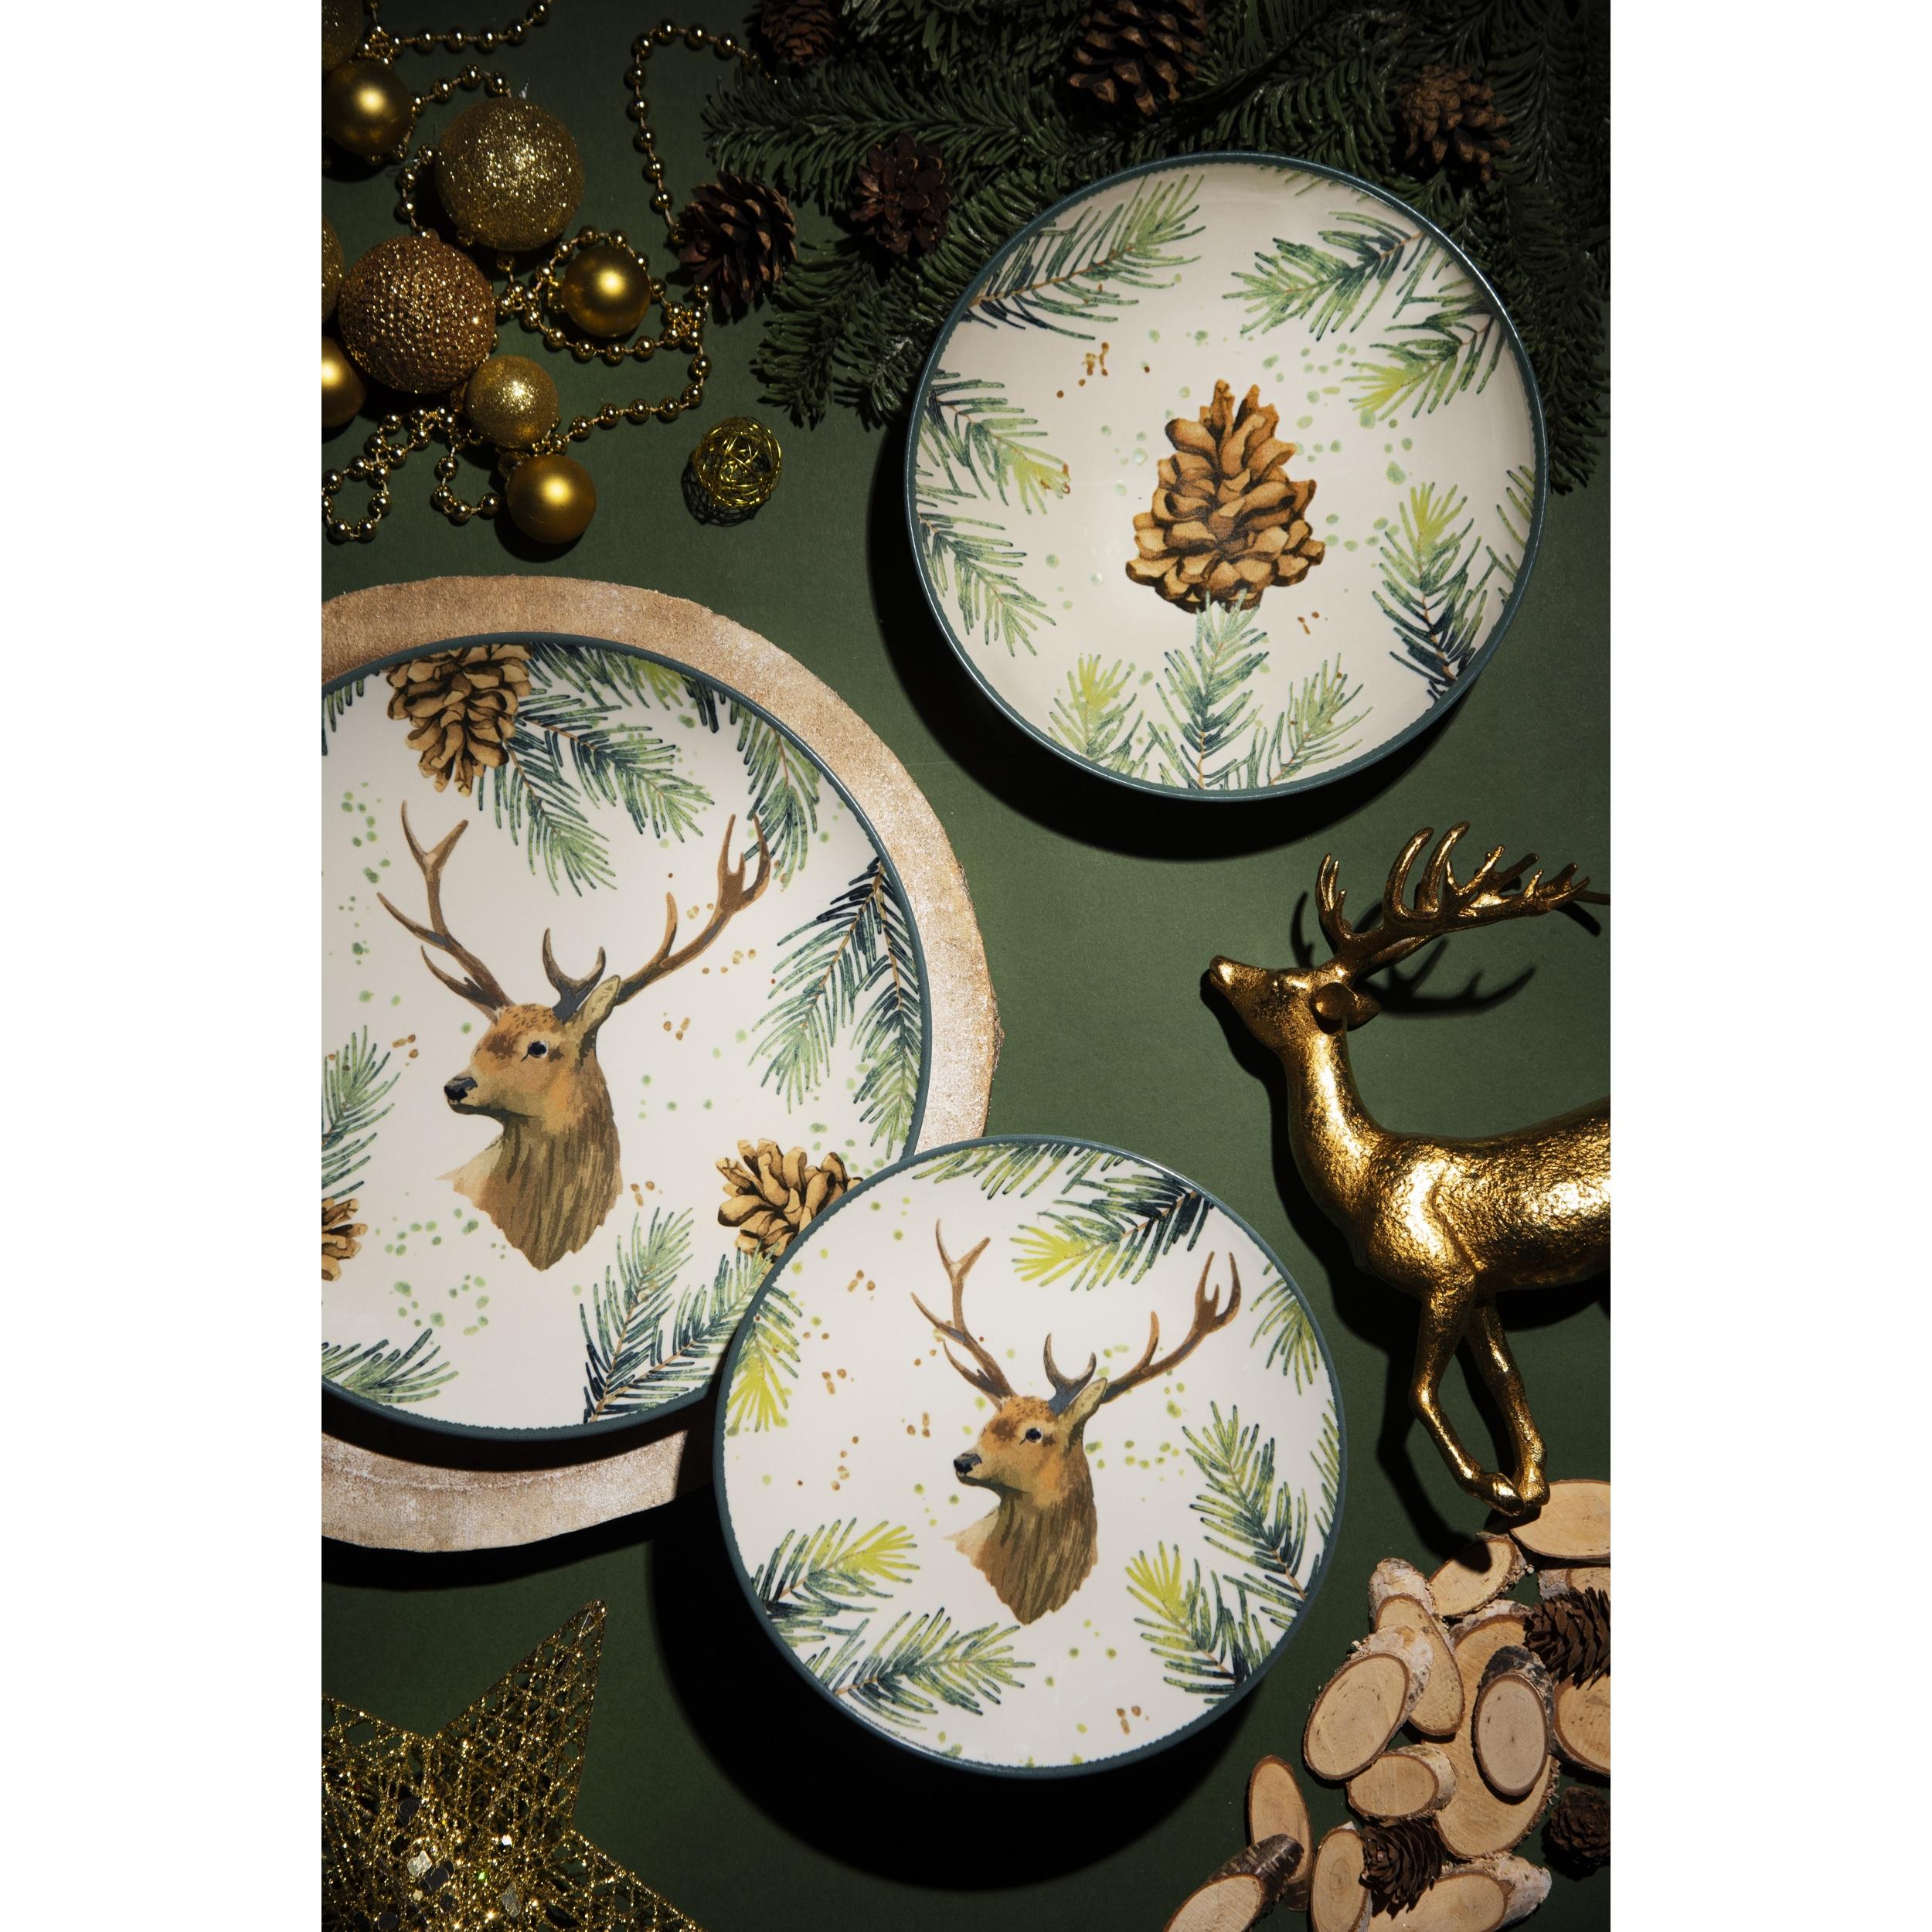 Servizio piatti 12 pezzi Excelsa Nordic Deer, ceramica multicolore